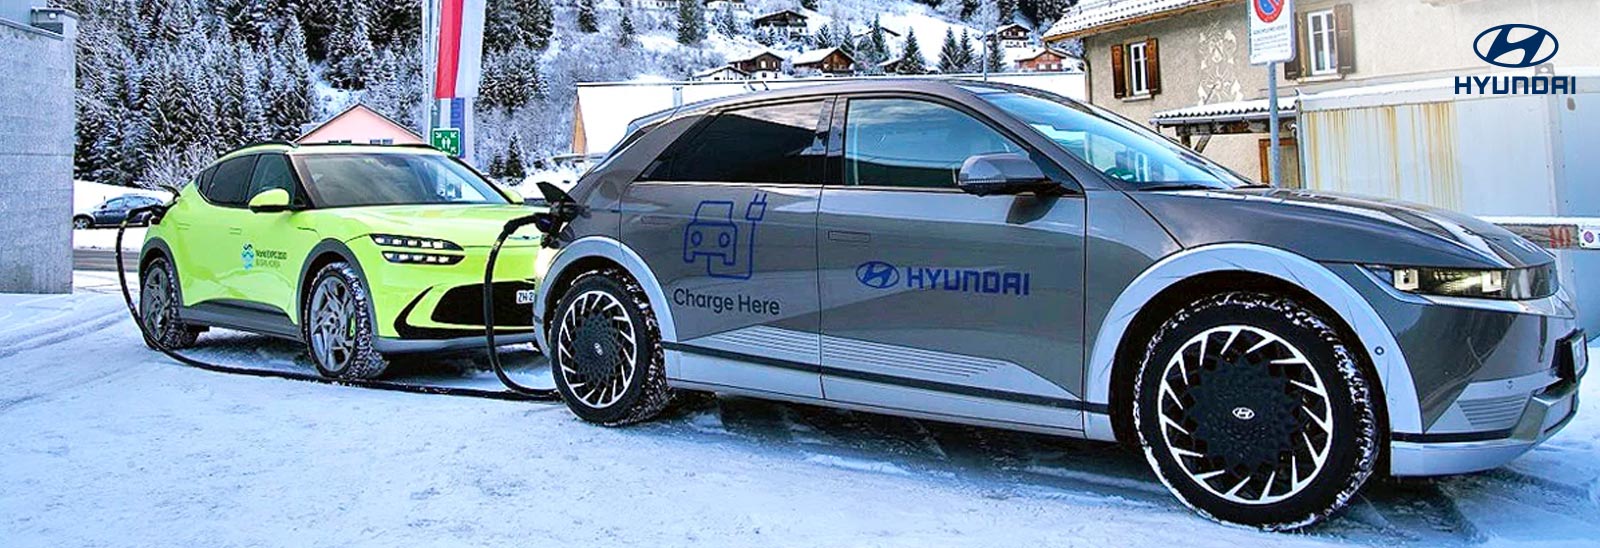 Vehículos ecológicos Hyundai en la ciudad de Davos